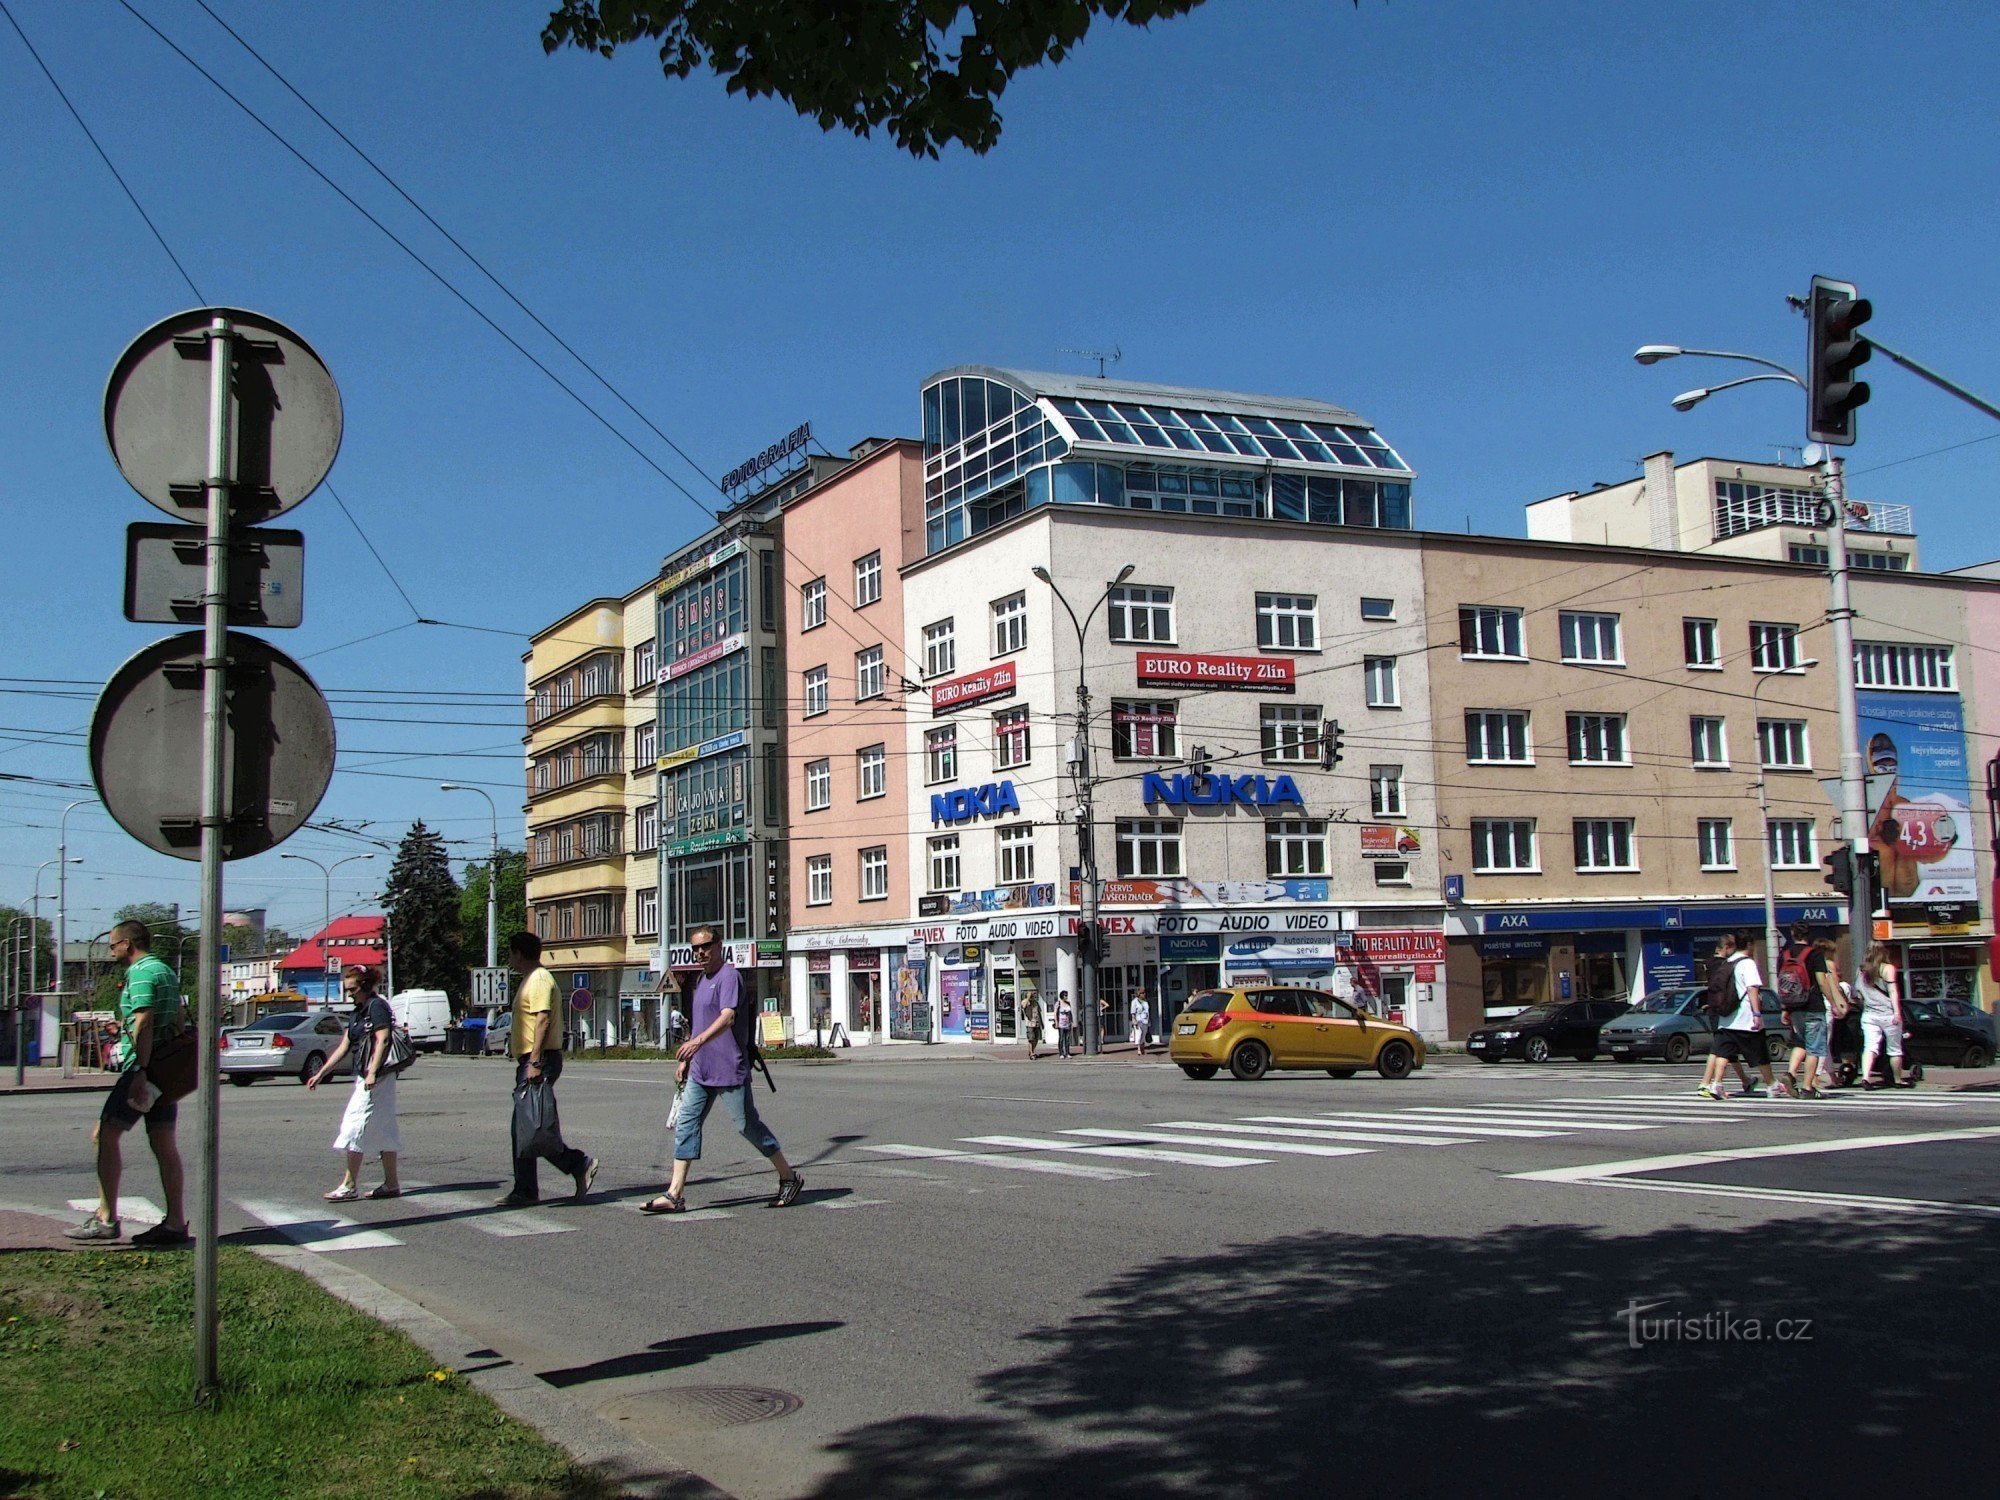 Zlín - en av de viktigaste korsningarna i staden